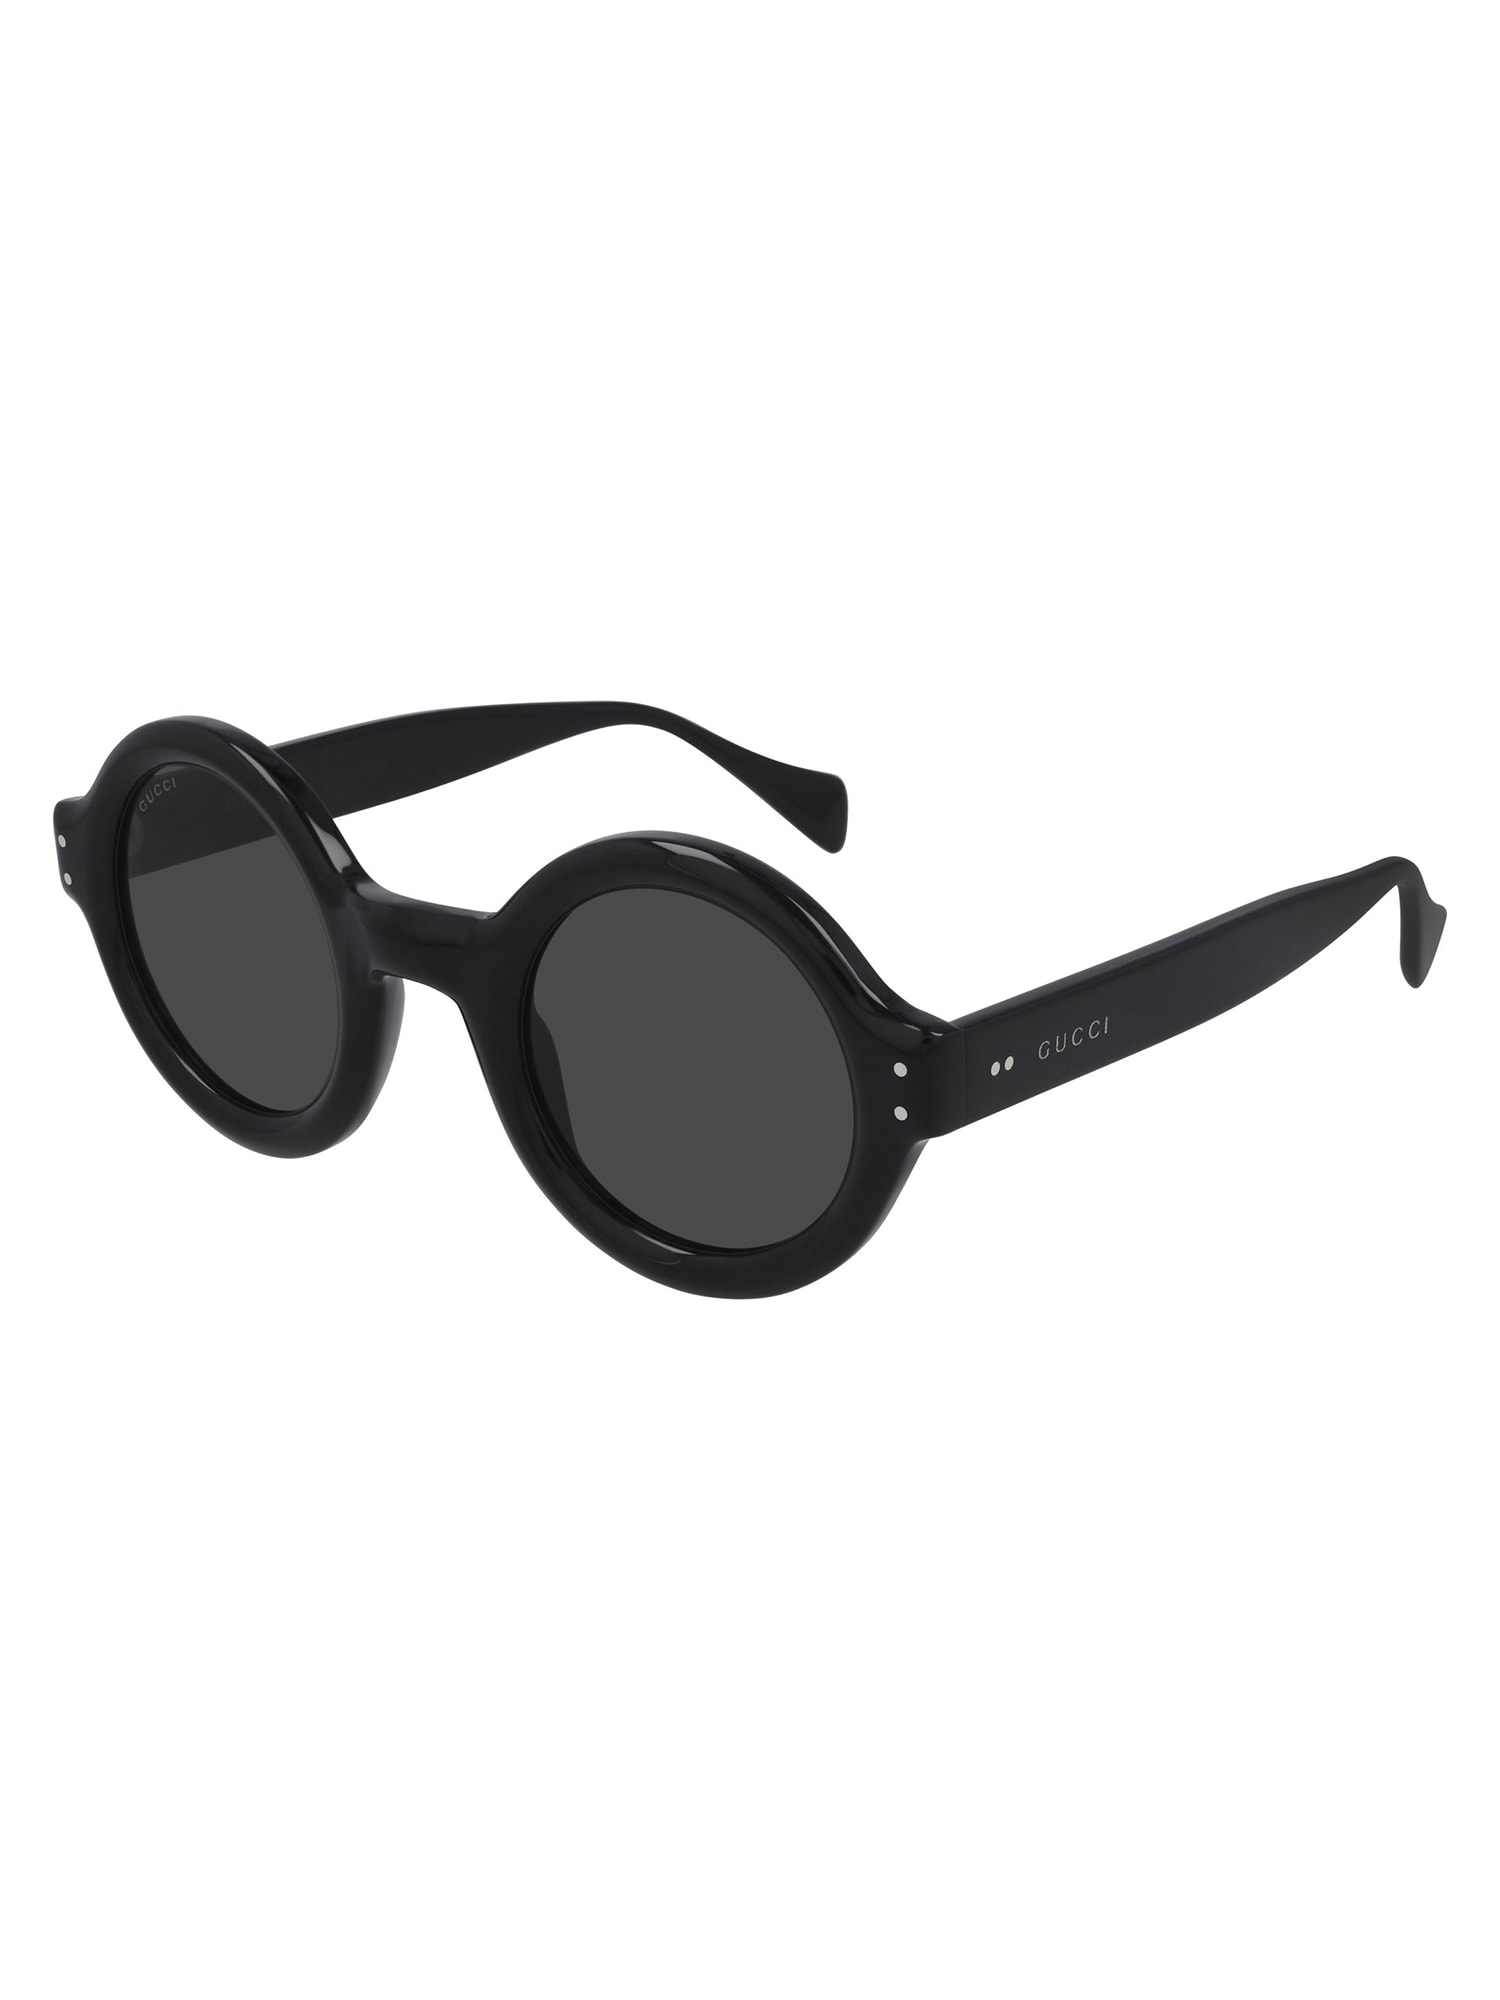 Gucci GG0871S Sunglasses